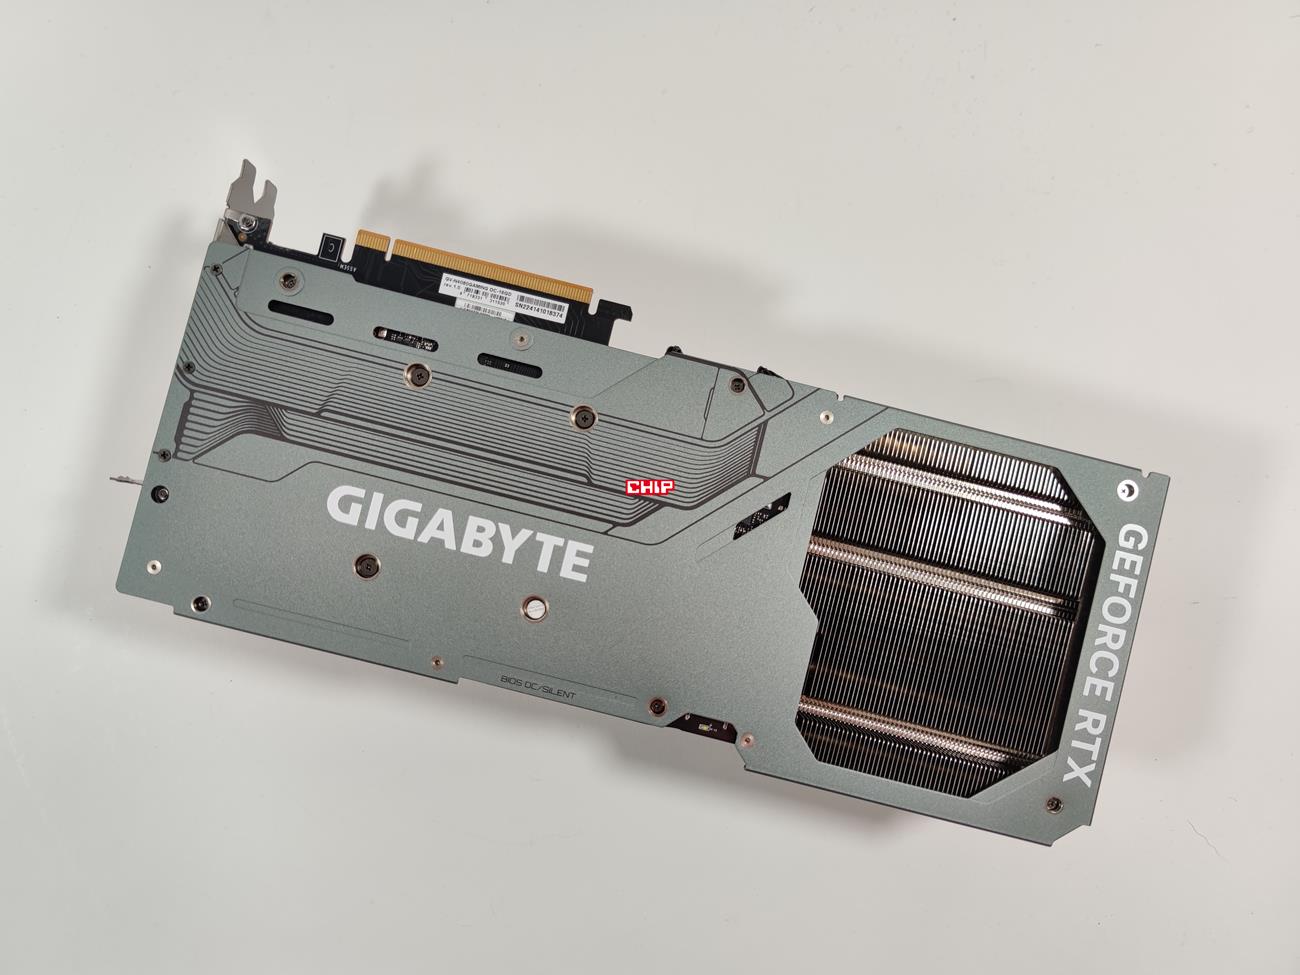 test Gigabyte GeForce RTX 4080 Gaming OC, recenzja Gigabyte GeForce RTX 4080 Gaming OC, opinia Gigabyte GeForce RTX 4080 Gaming OC